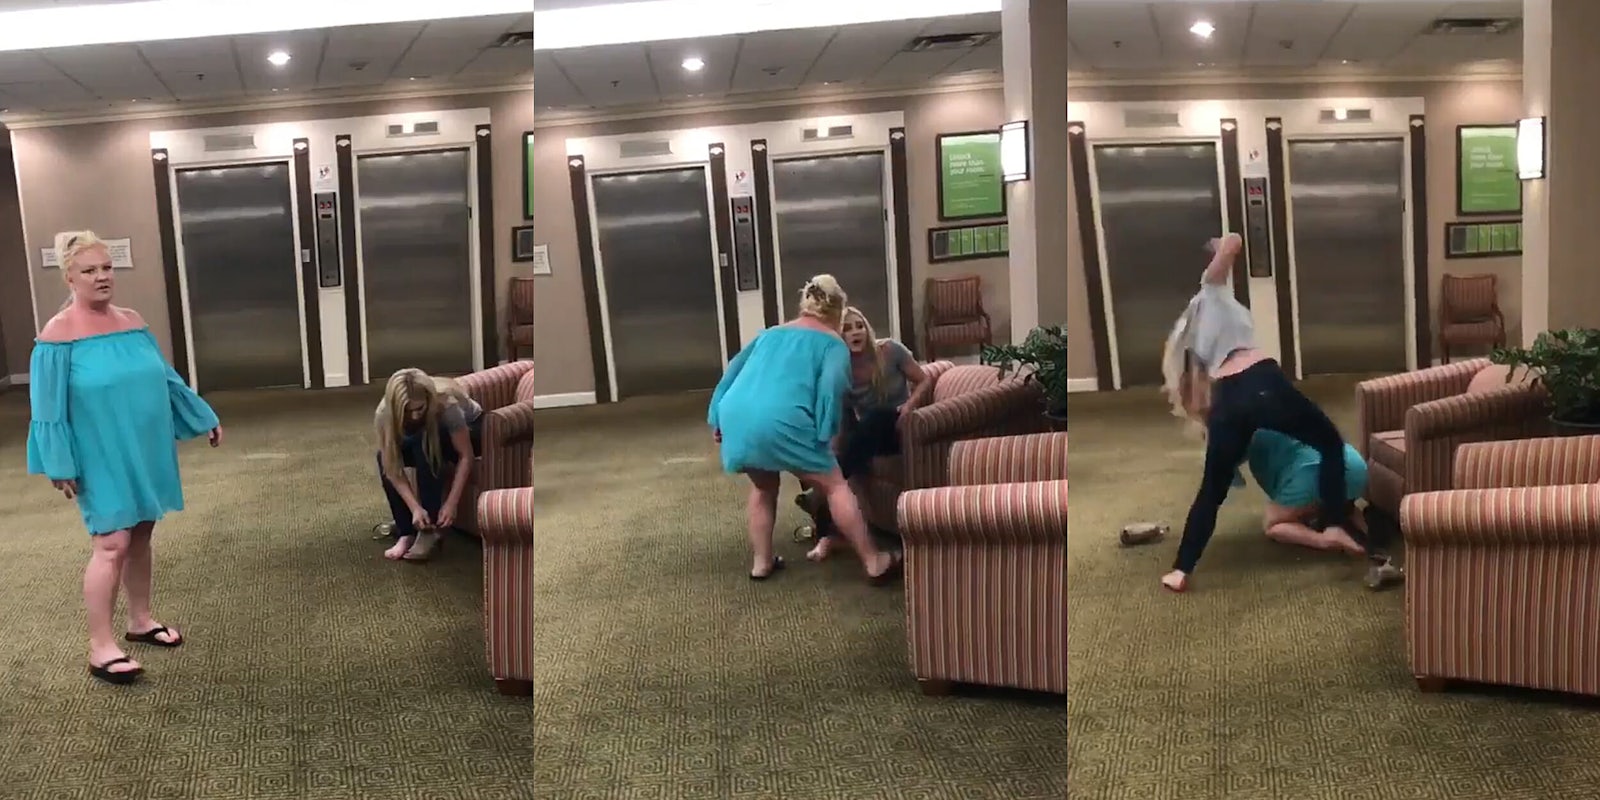 Woman in blue dress starts fight in lobby